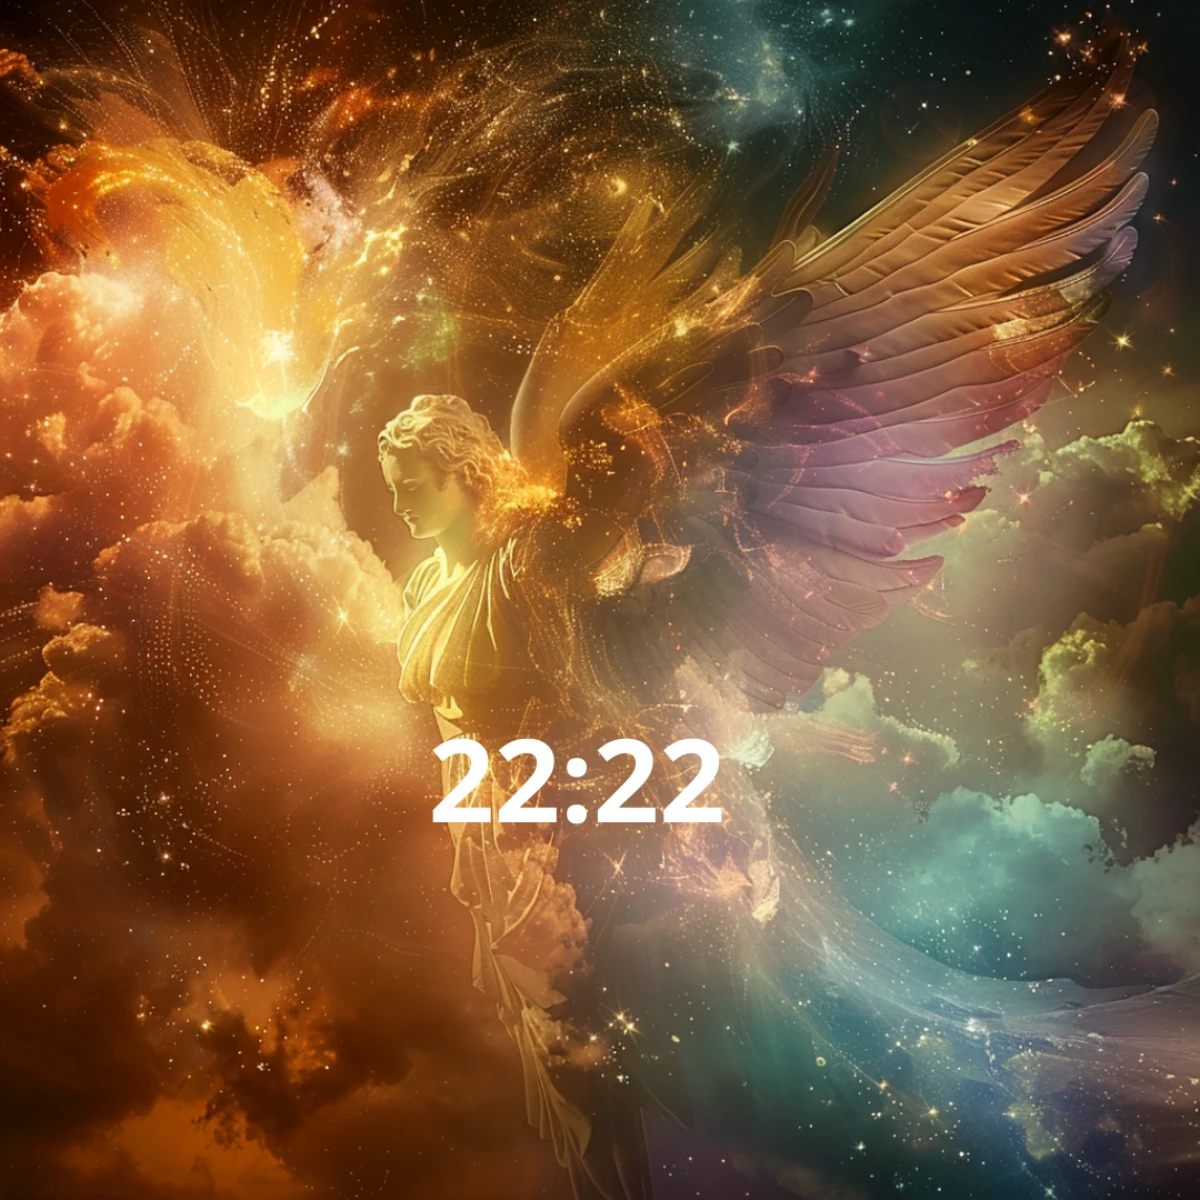 heure miroir 22 22 signification ange univers couleurs chaudes